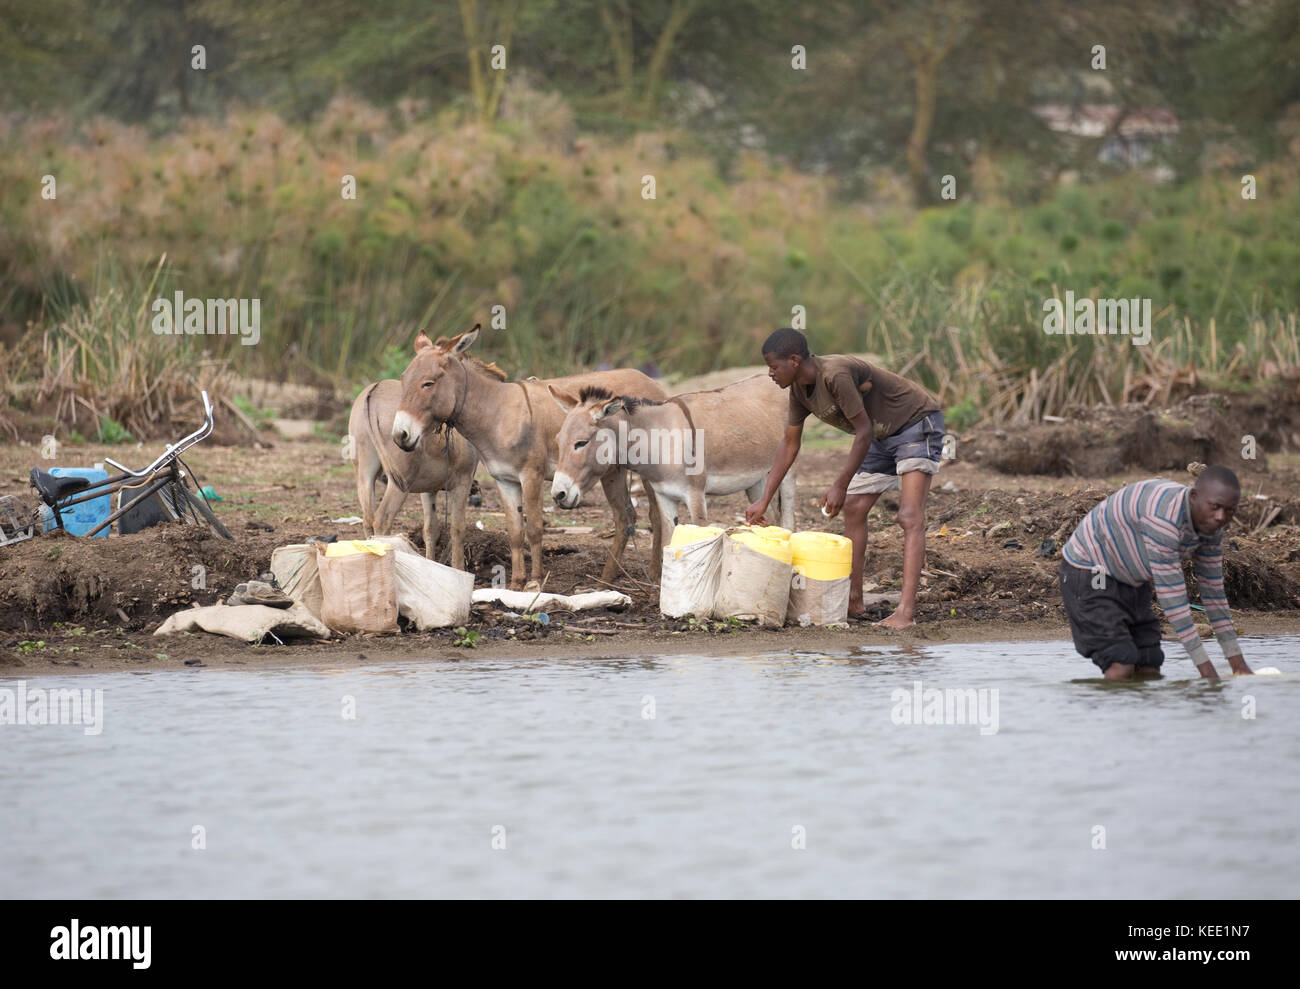 African men and donkeys collecting water Lake Naivasha Kenya Stock Photo